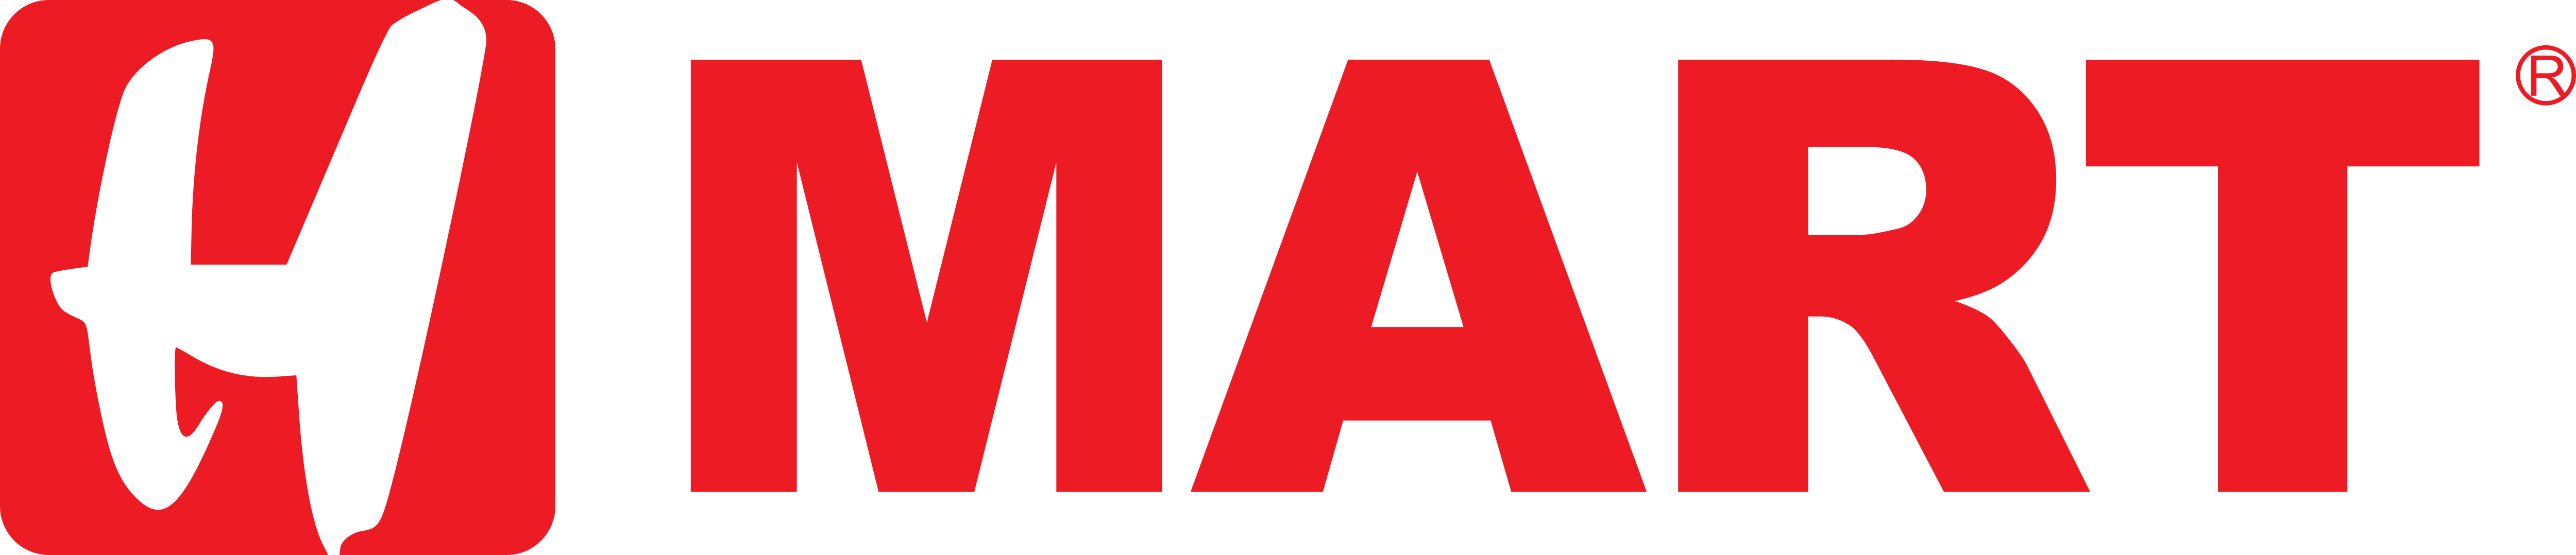 H Mart – Logos Download